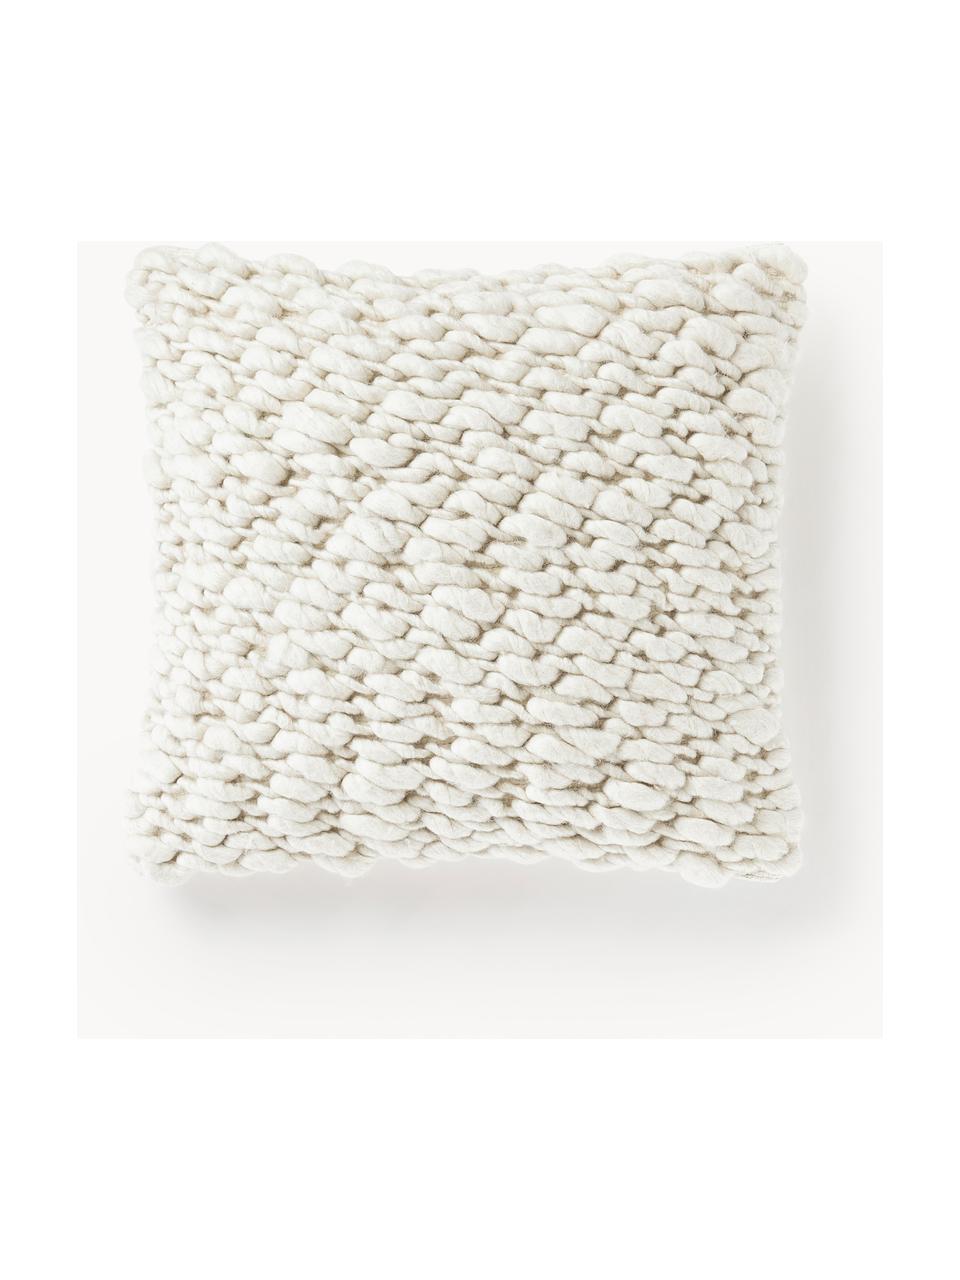 Copricuscino in maglia grossa fatto a mano Belen, Retro: 100% cotone, Bianco crema, Larg. 50 x Lung. 50 cm